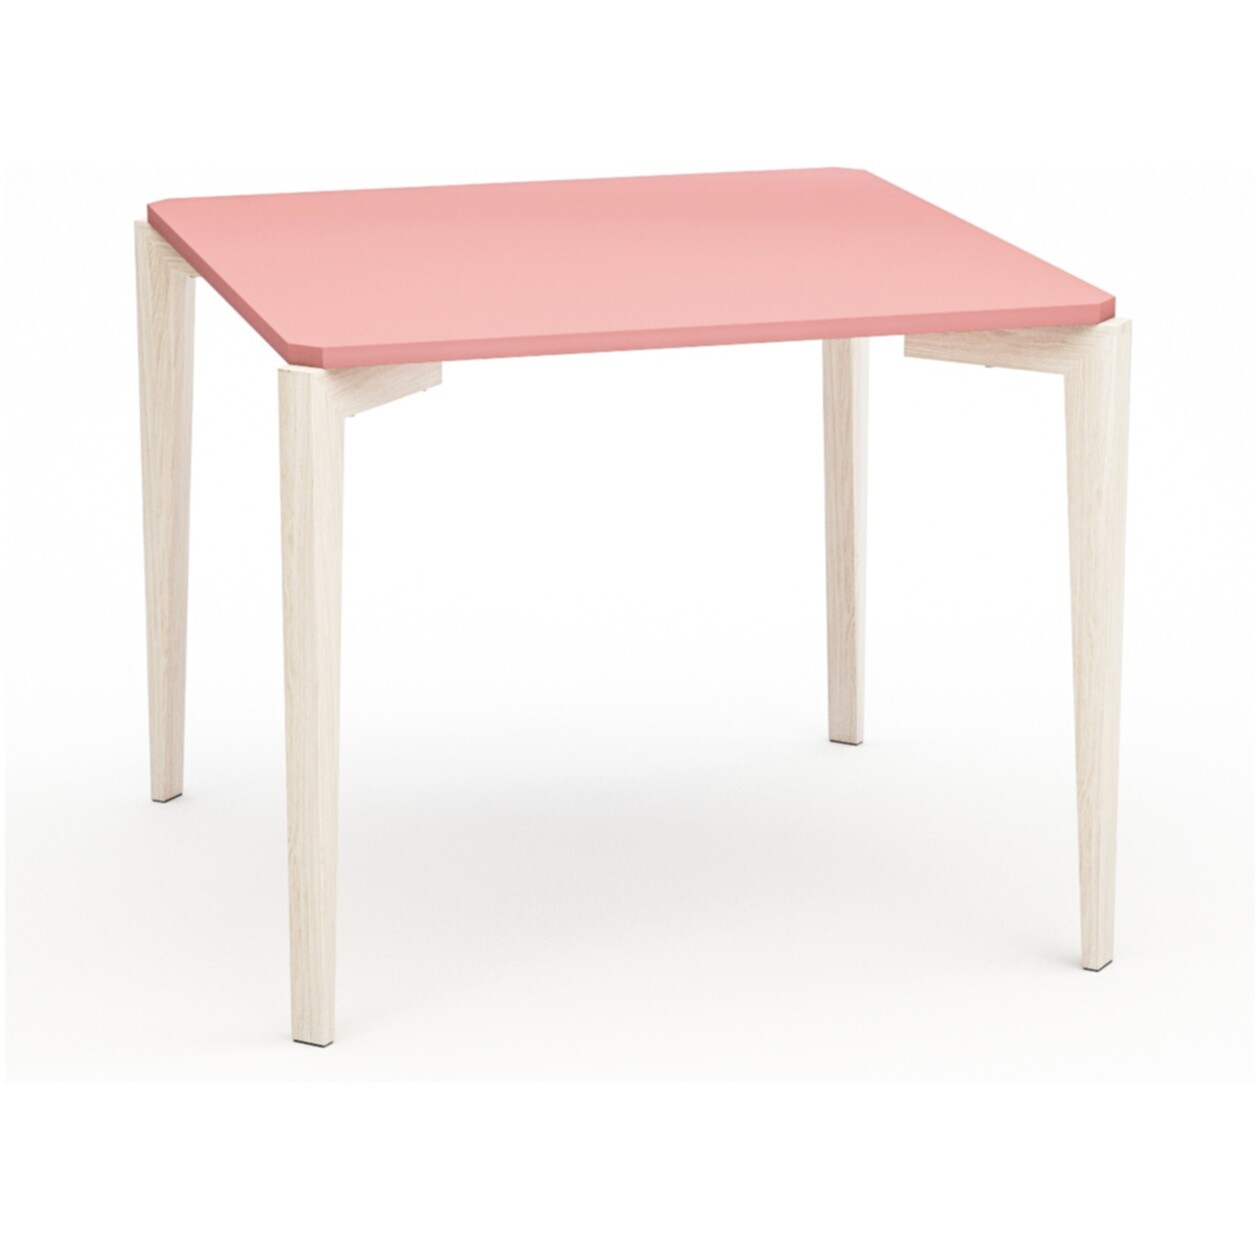 Обеденный стол квадратный розовый с ножками беленый дуб 93 см Quatro Compact